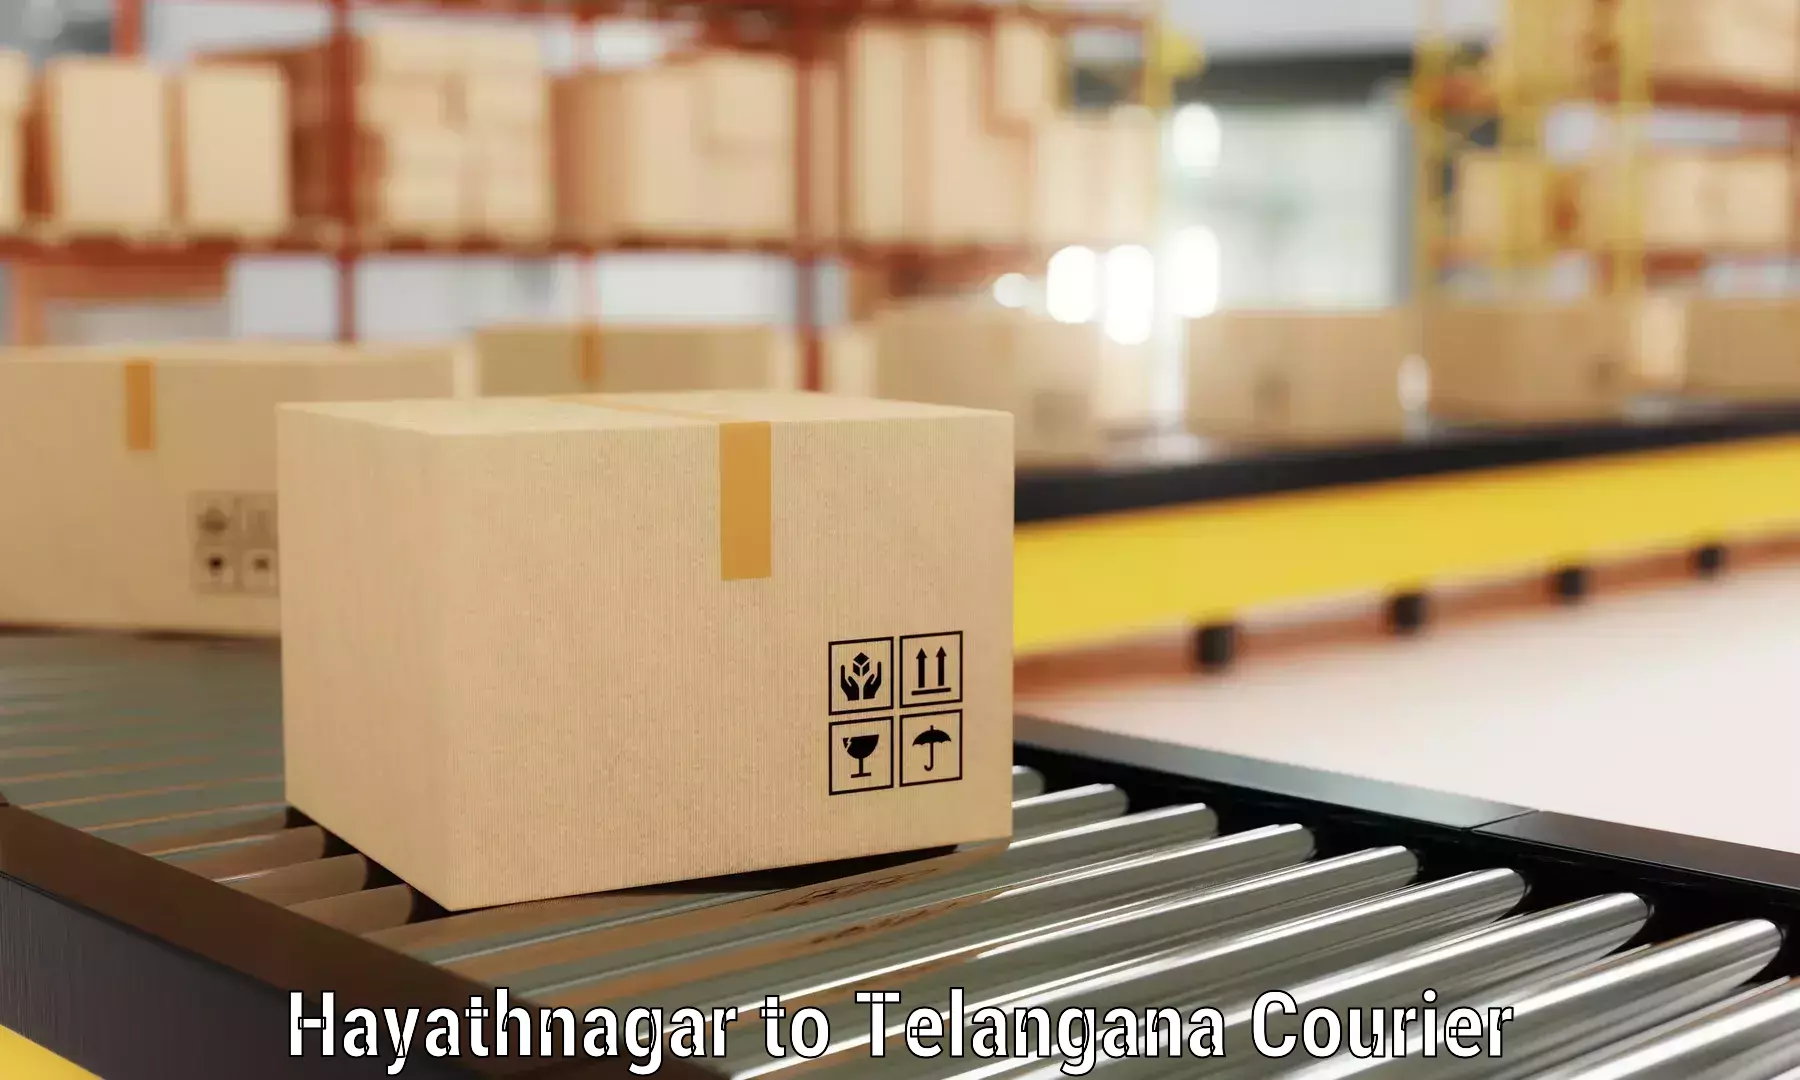 Furniture moving experts Hayathnagar to Cheyyur